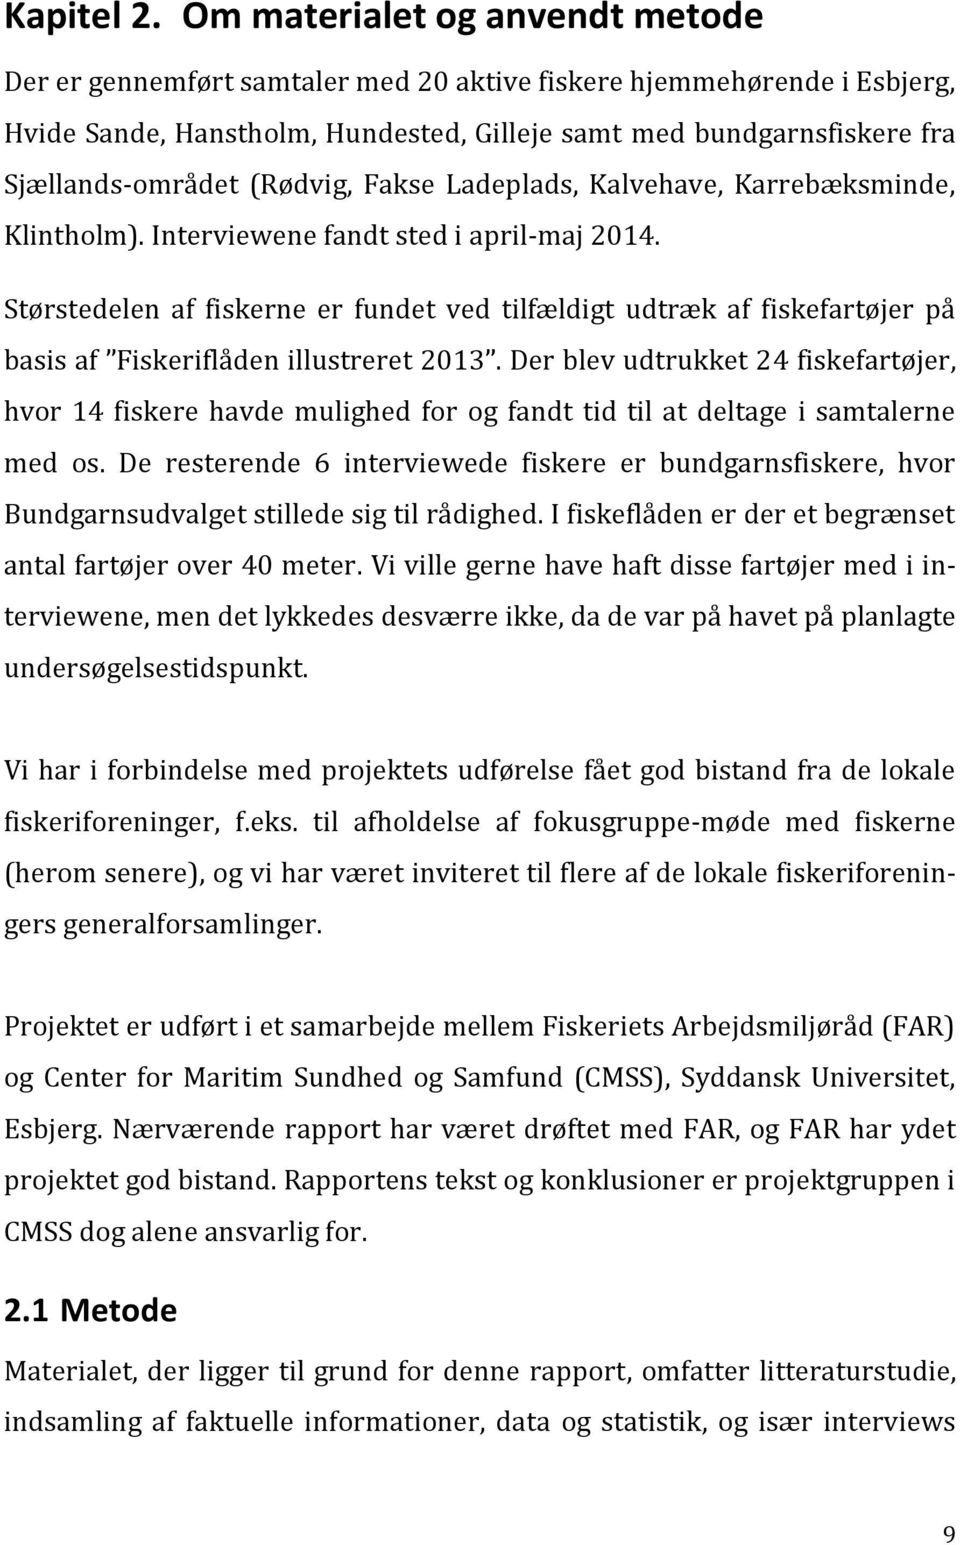 (Rødvig, Fakse Ladeplads, Kalvehave, Karrebæksminde, Klintholm). Interviewene fandt sted i april-maj 2014.